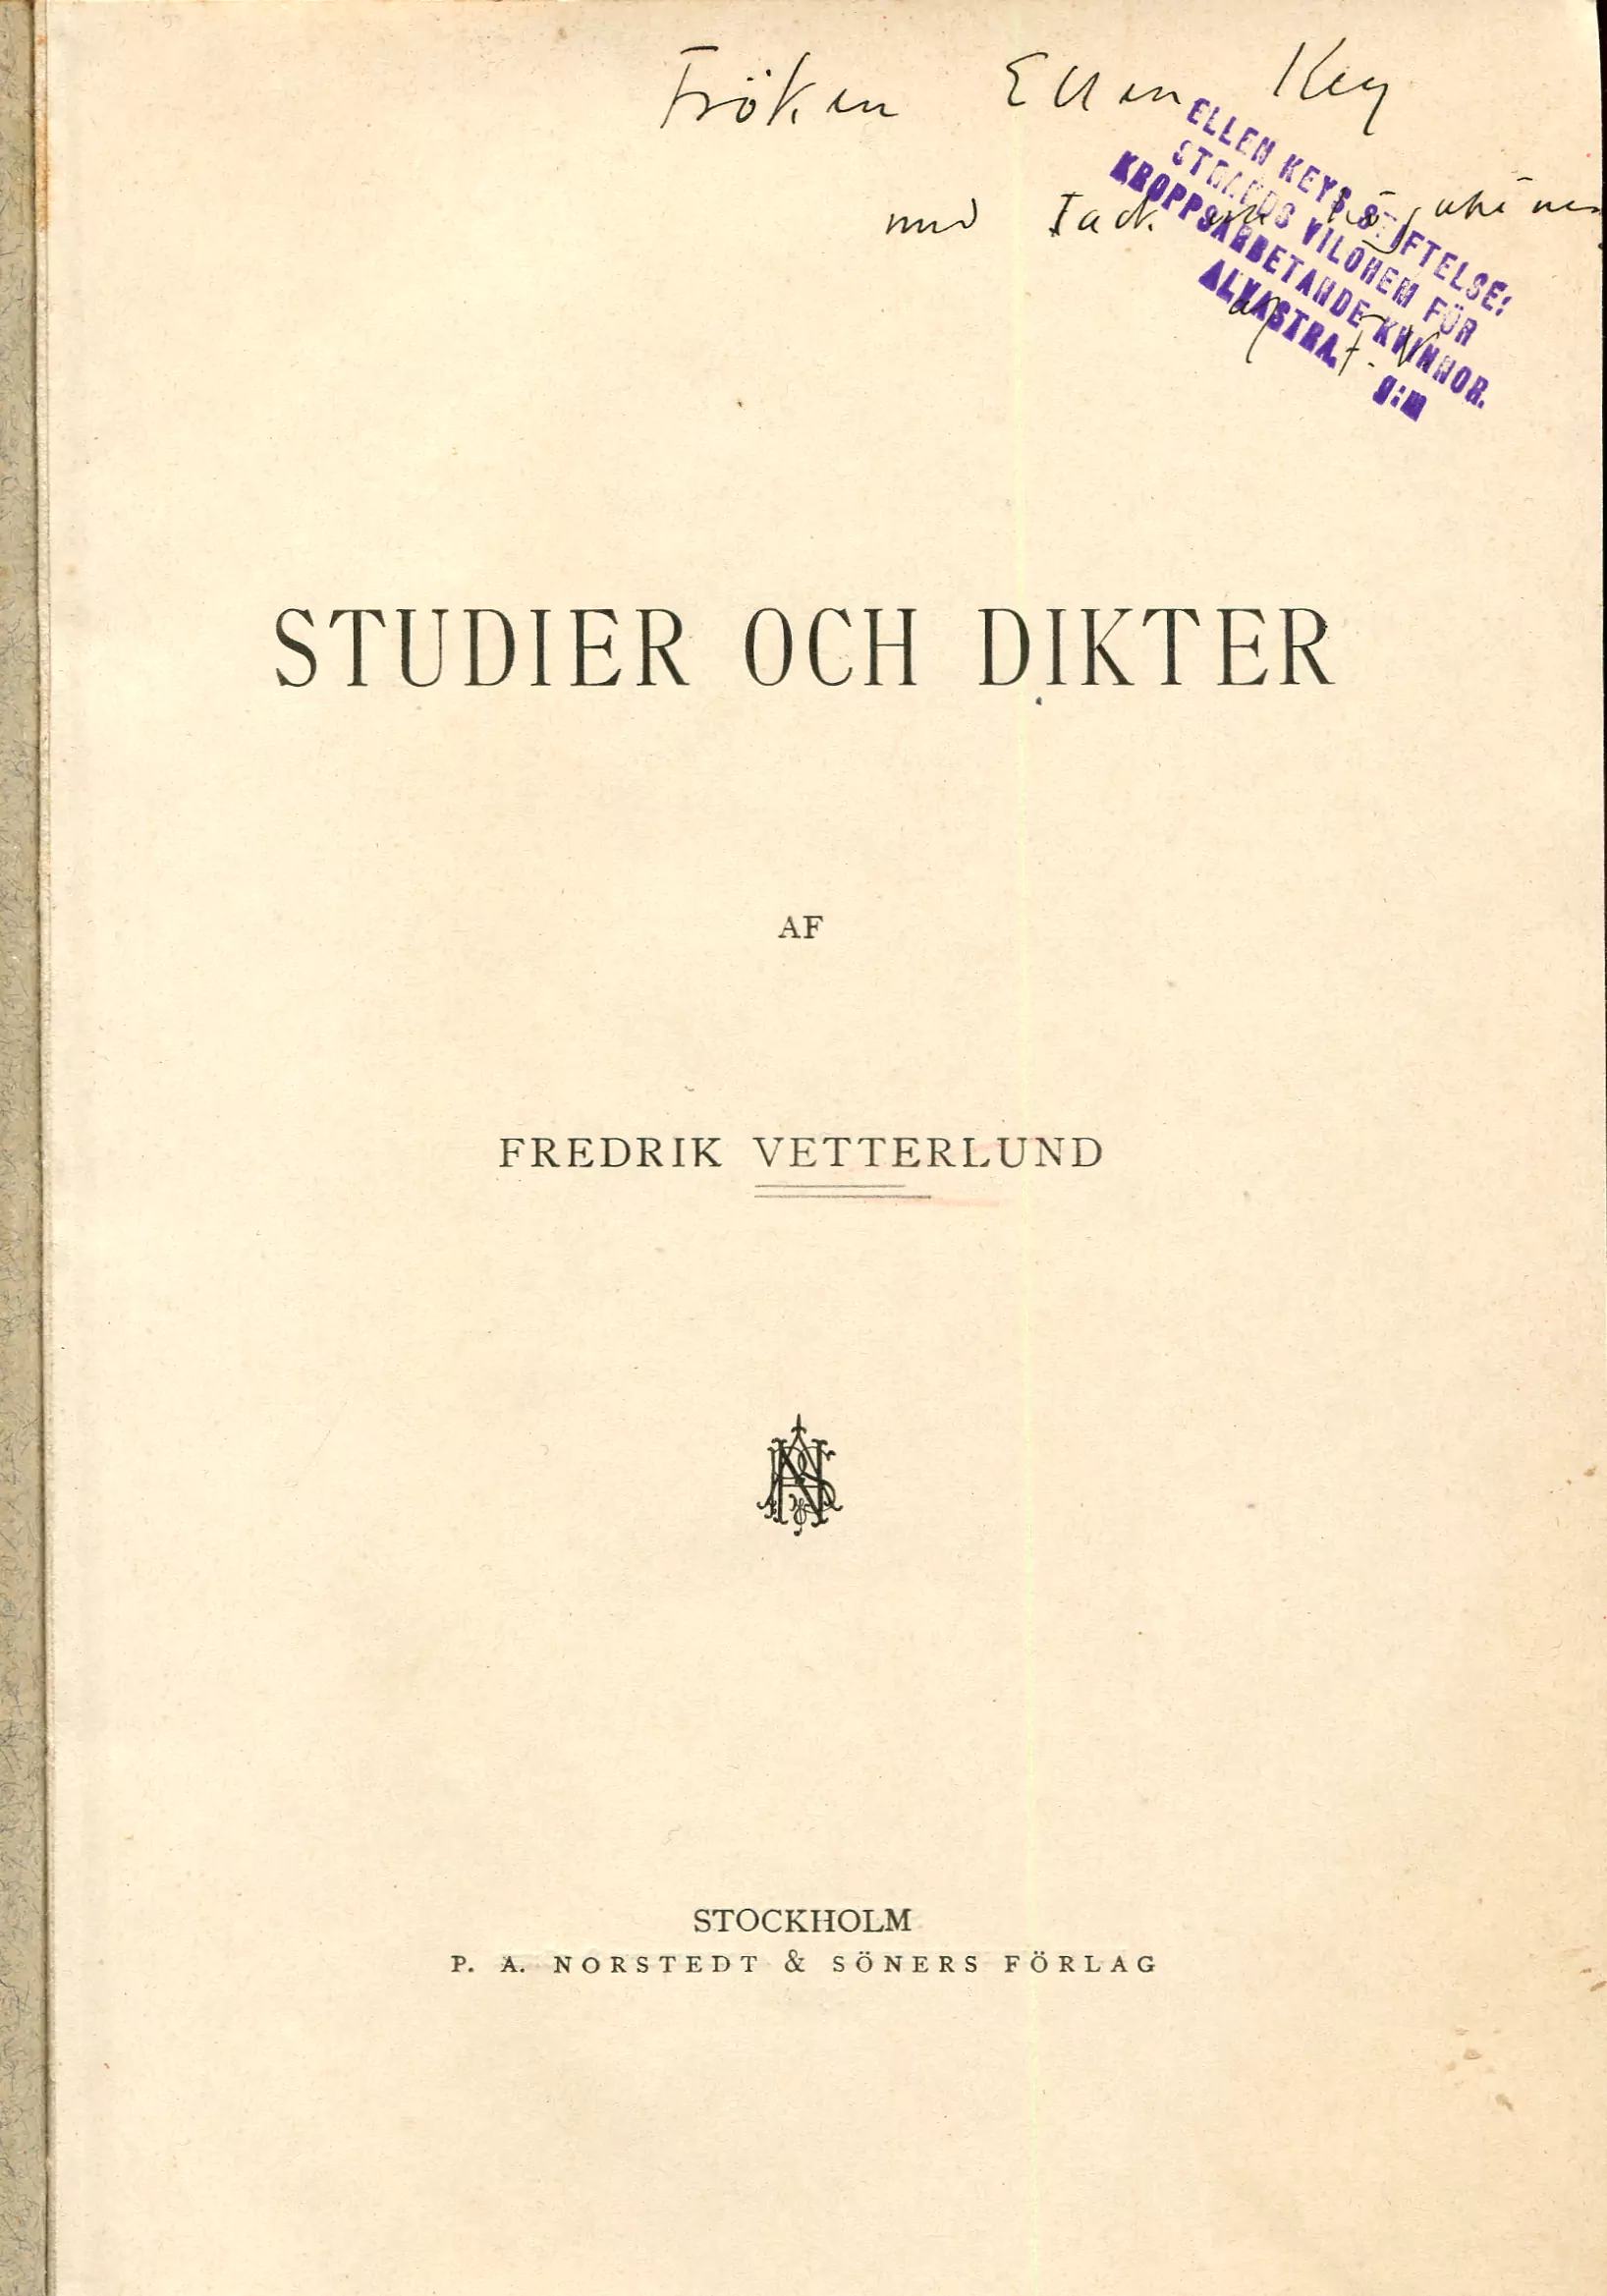 Studier och dikter, Stockholm 1901